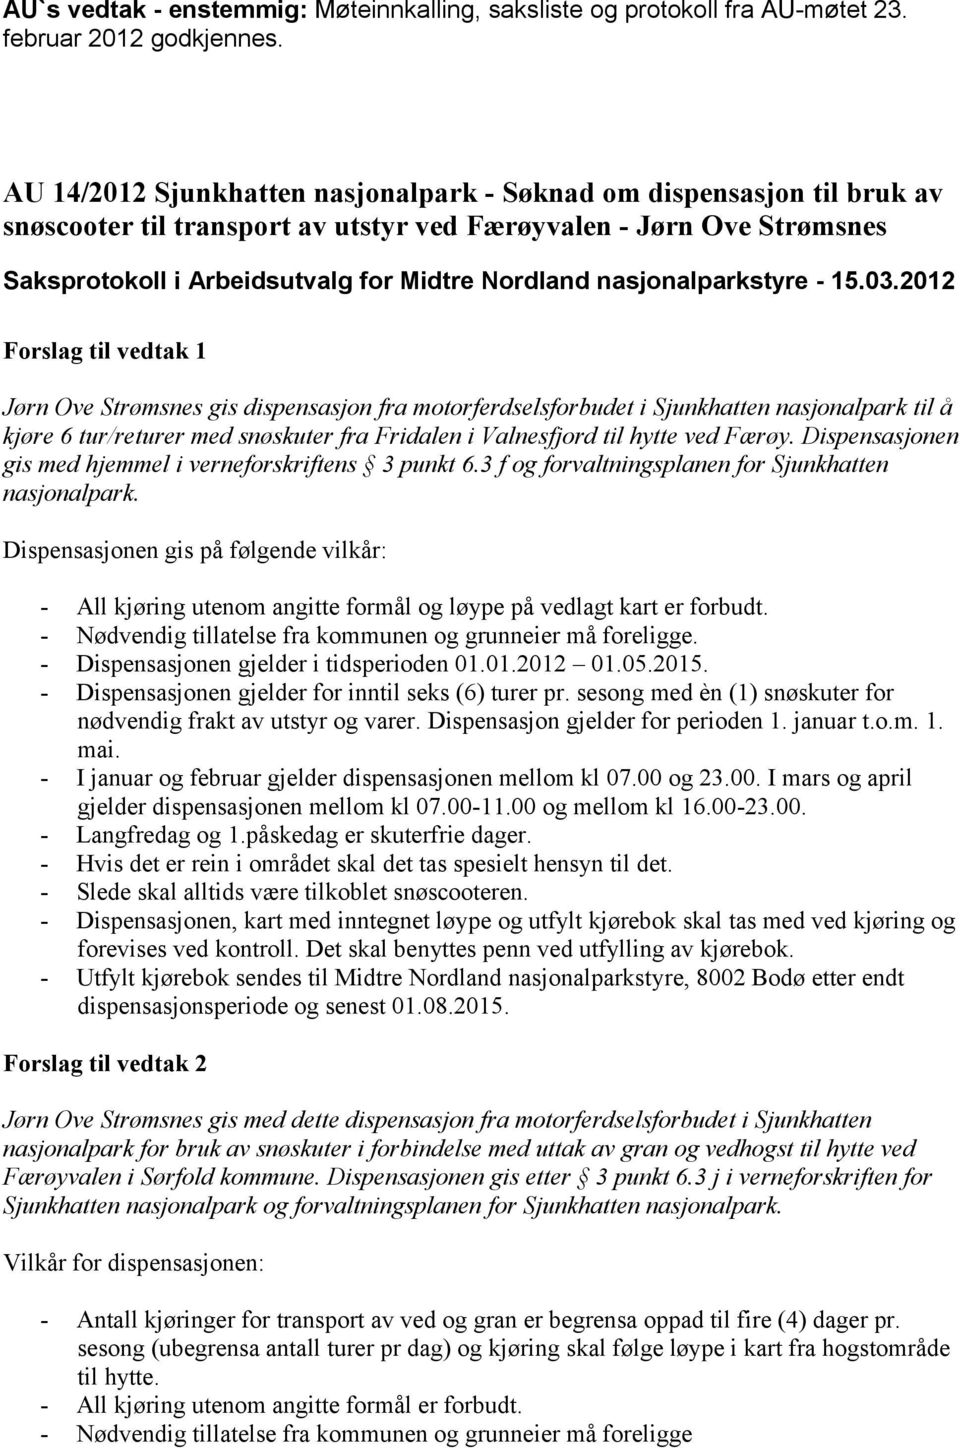 motorferdselsforbudet i Sjunkhatten nasjonalpark til å kjøre 6 tur/returer med snøskuter fra Fridalen i Valnesfjord til hytte ved Færøy. Dispensasjonen gis med hjemmel i verneforskriftens 3 punkt 6.